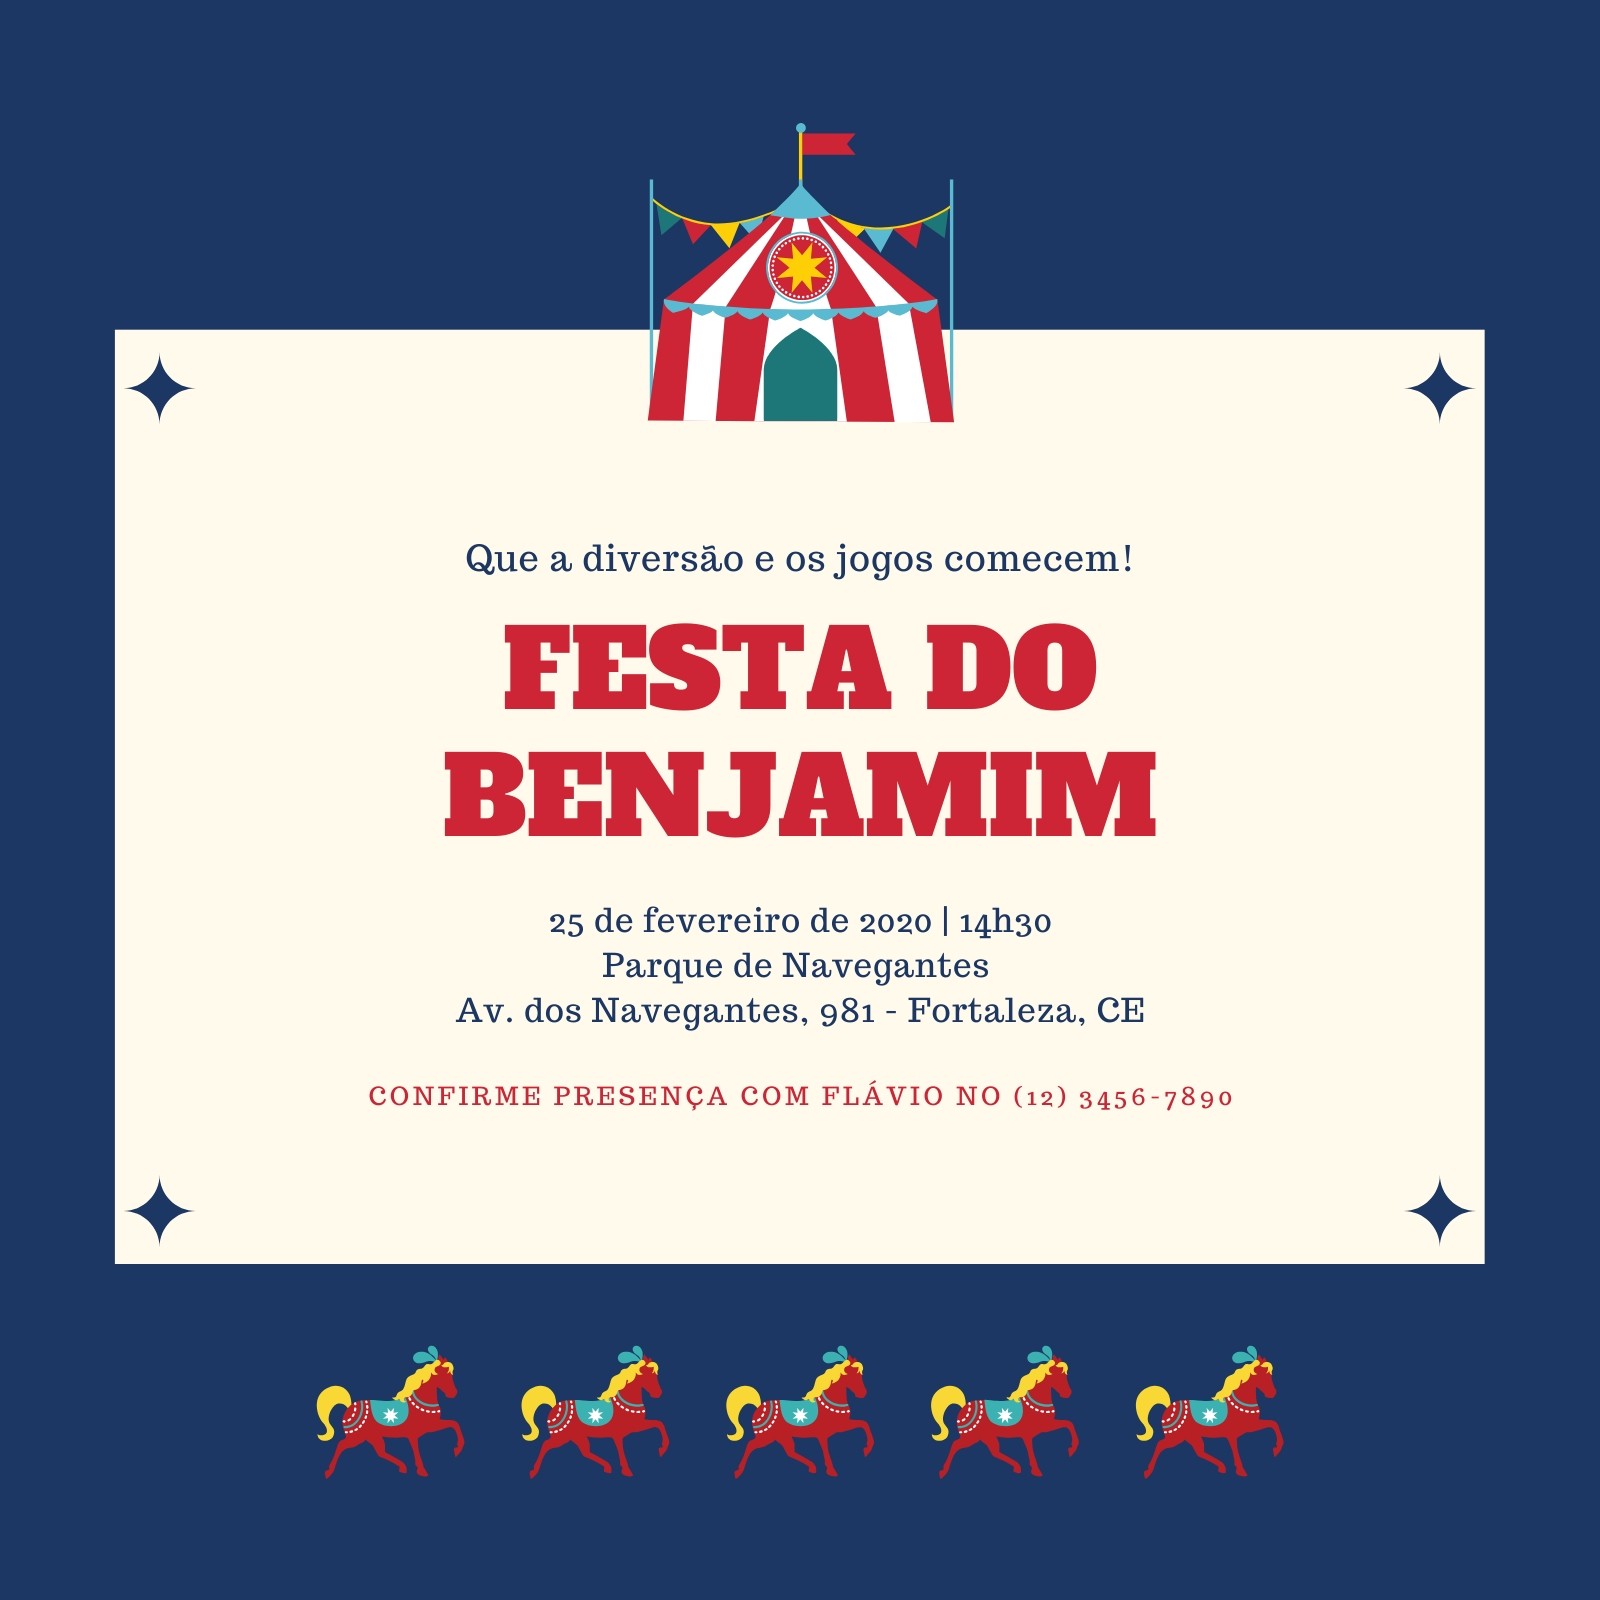 Lilás Eventos en Instagram: “Festa de 8 aninhos de Benjamin Tema